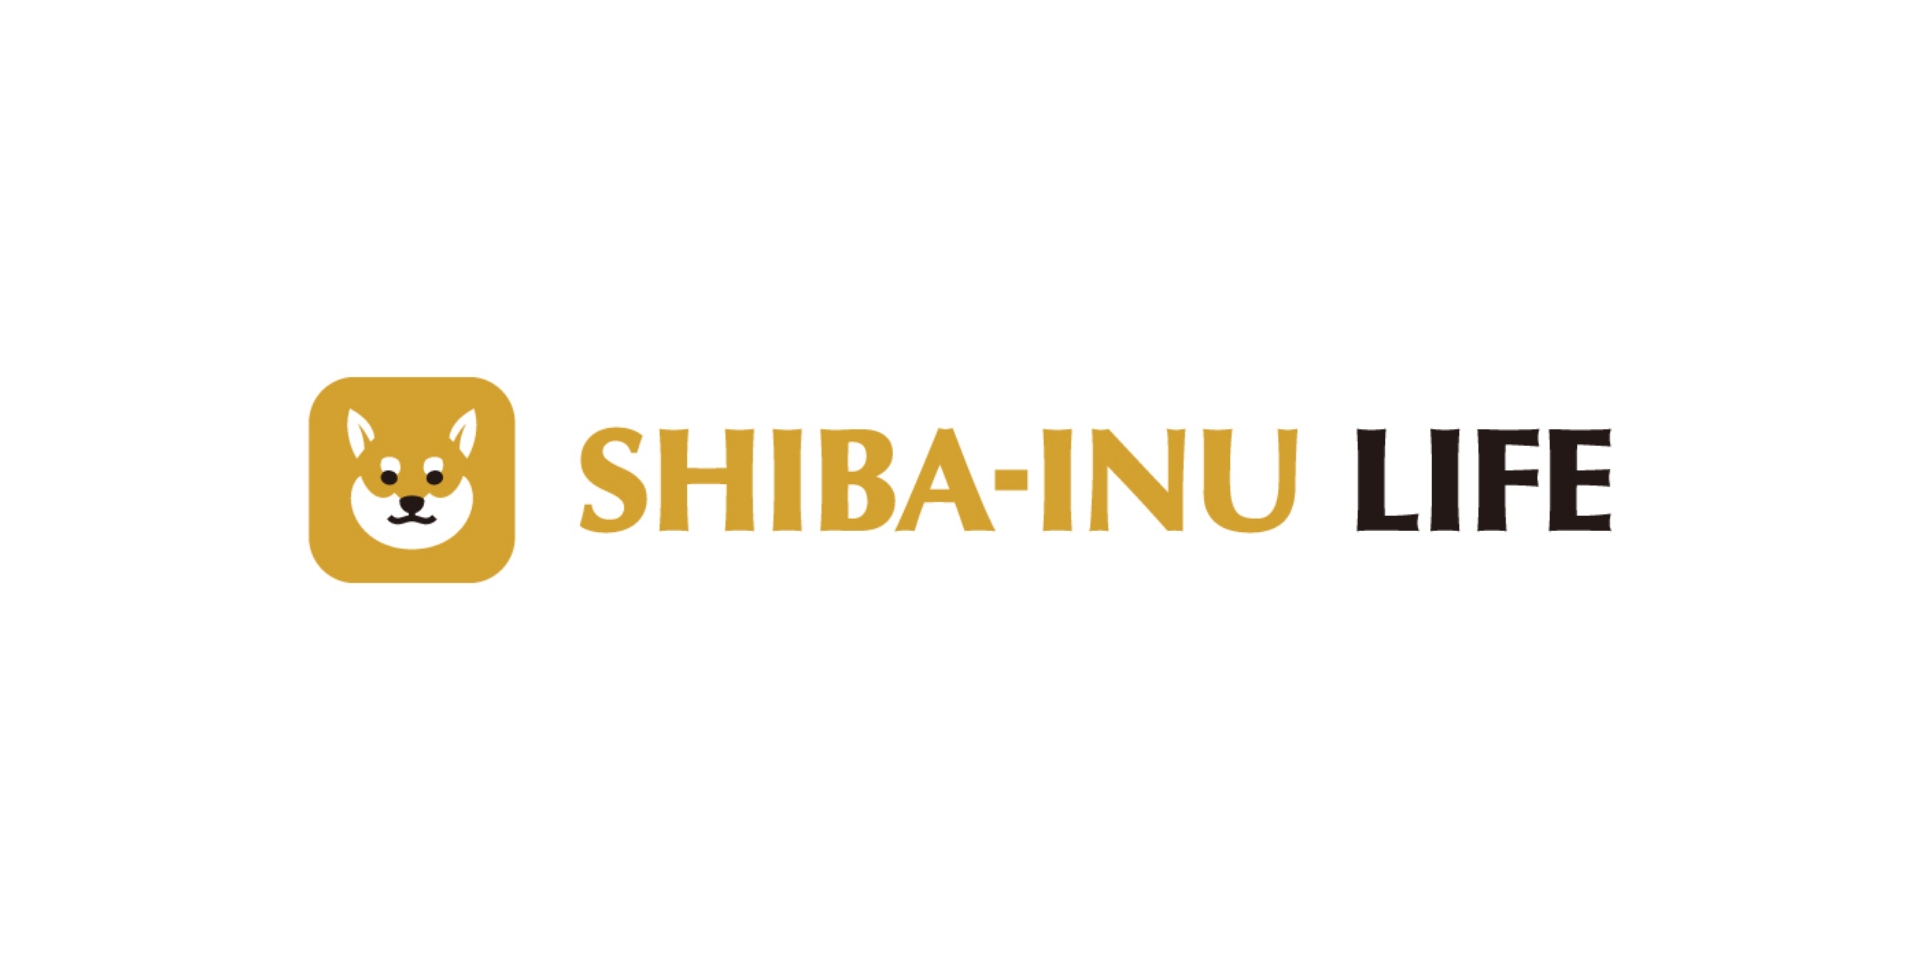 SHIBA-INU LIFE